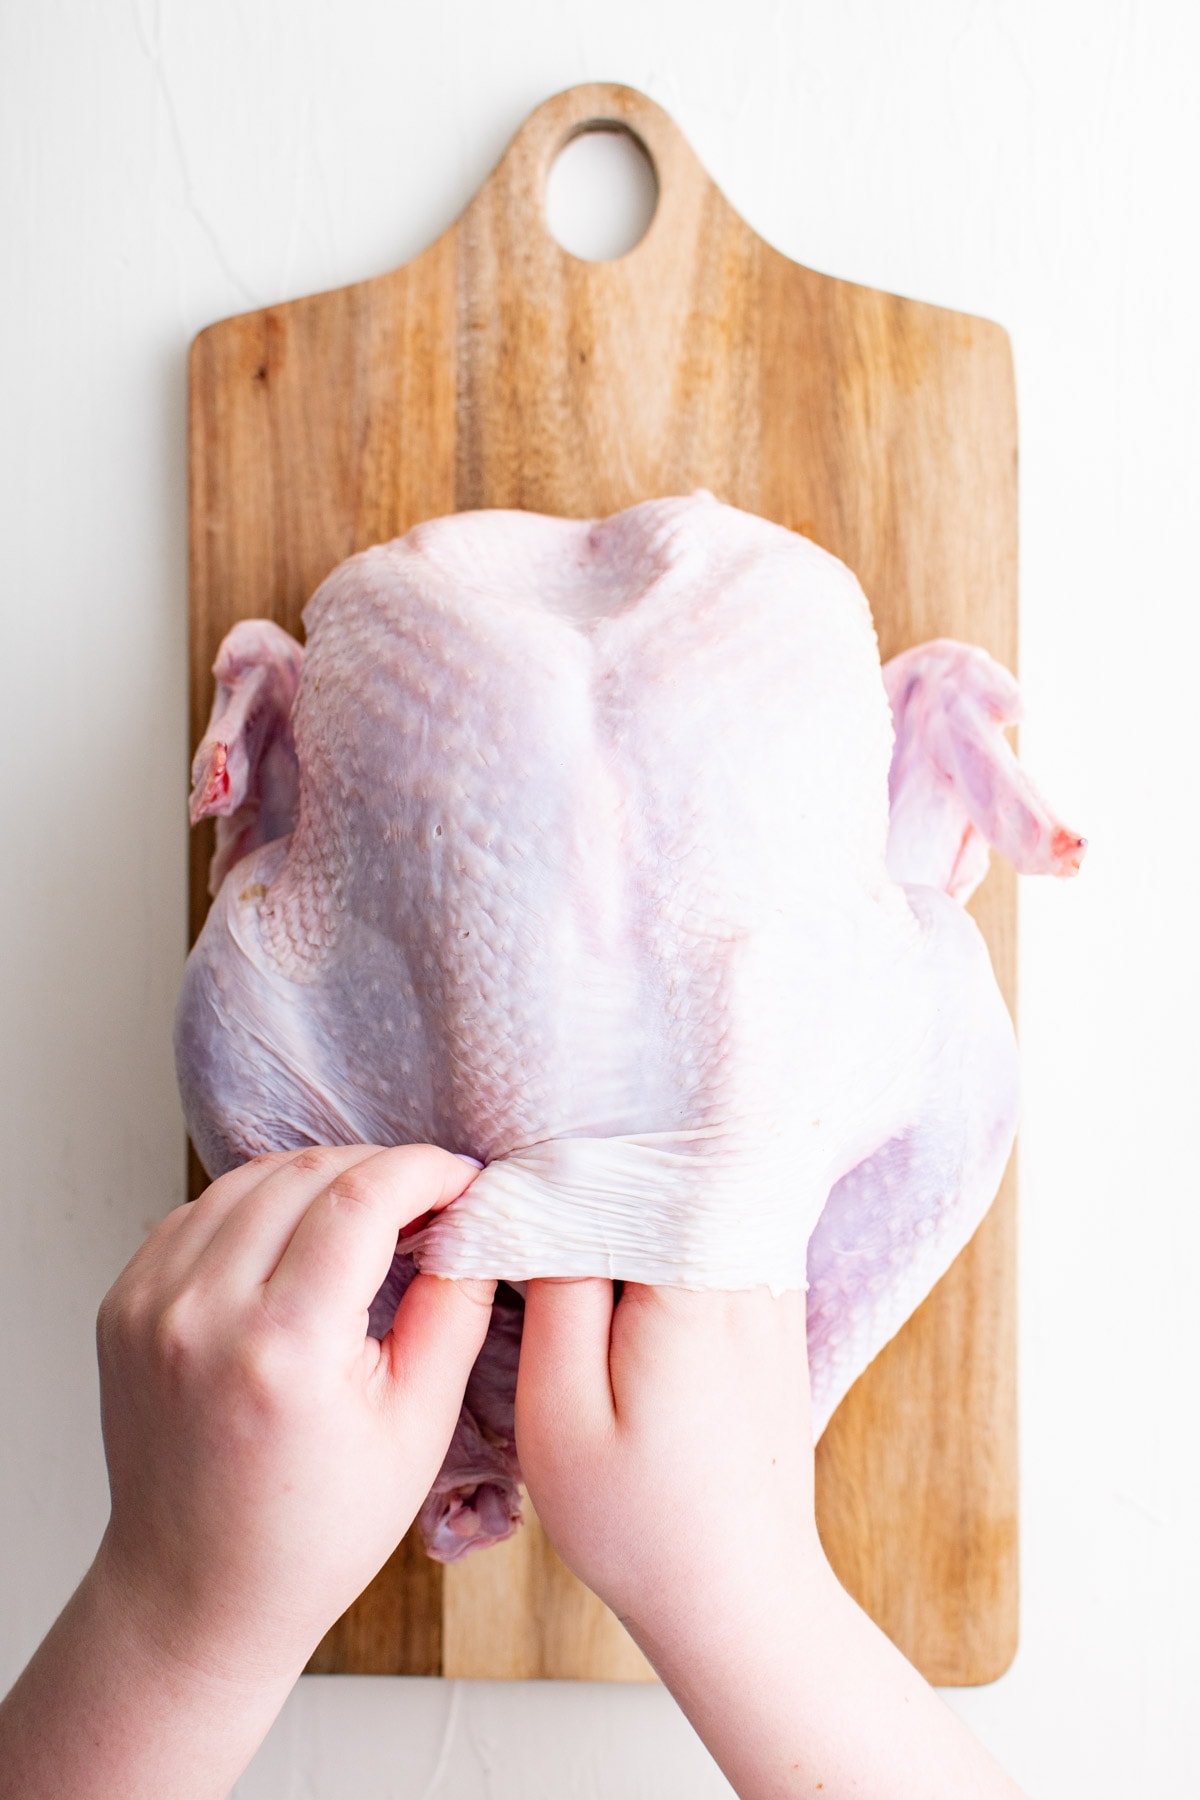 hand slid under skin on a turkey breast